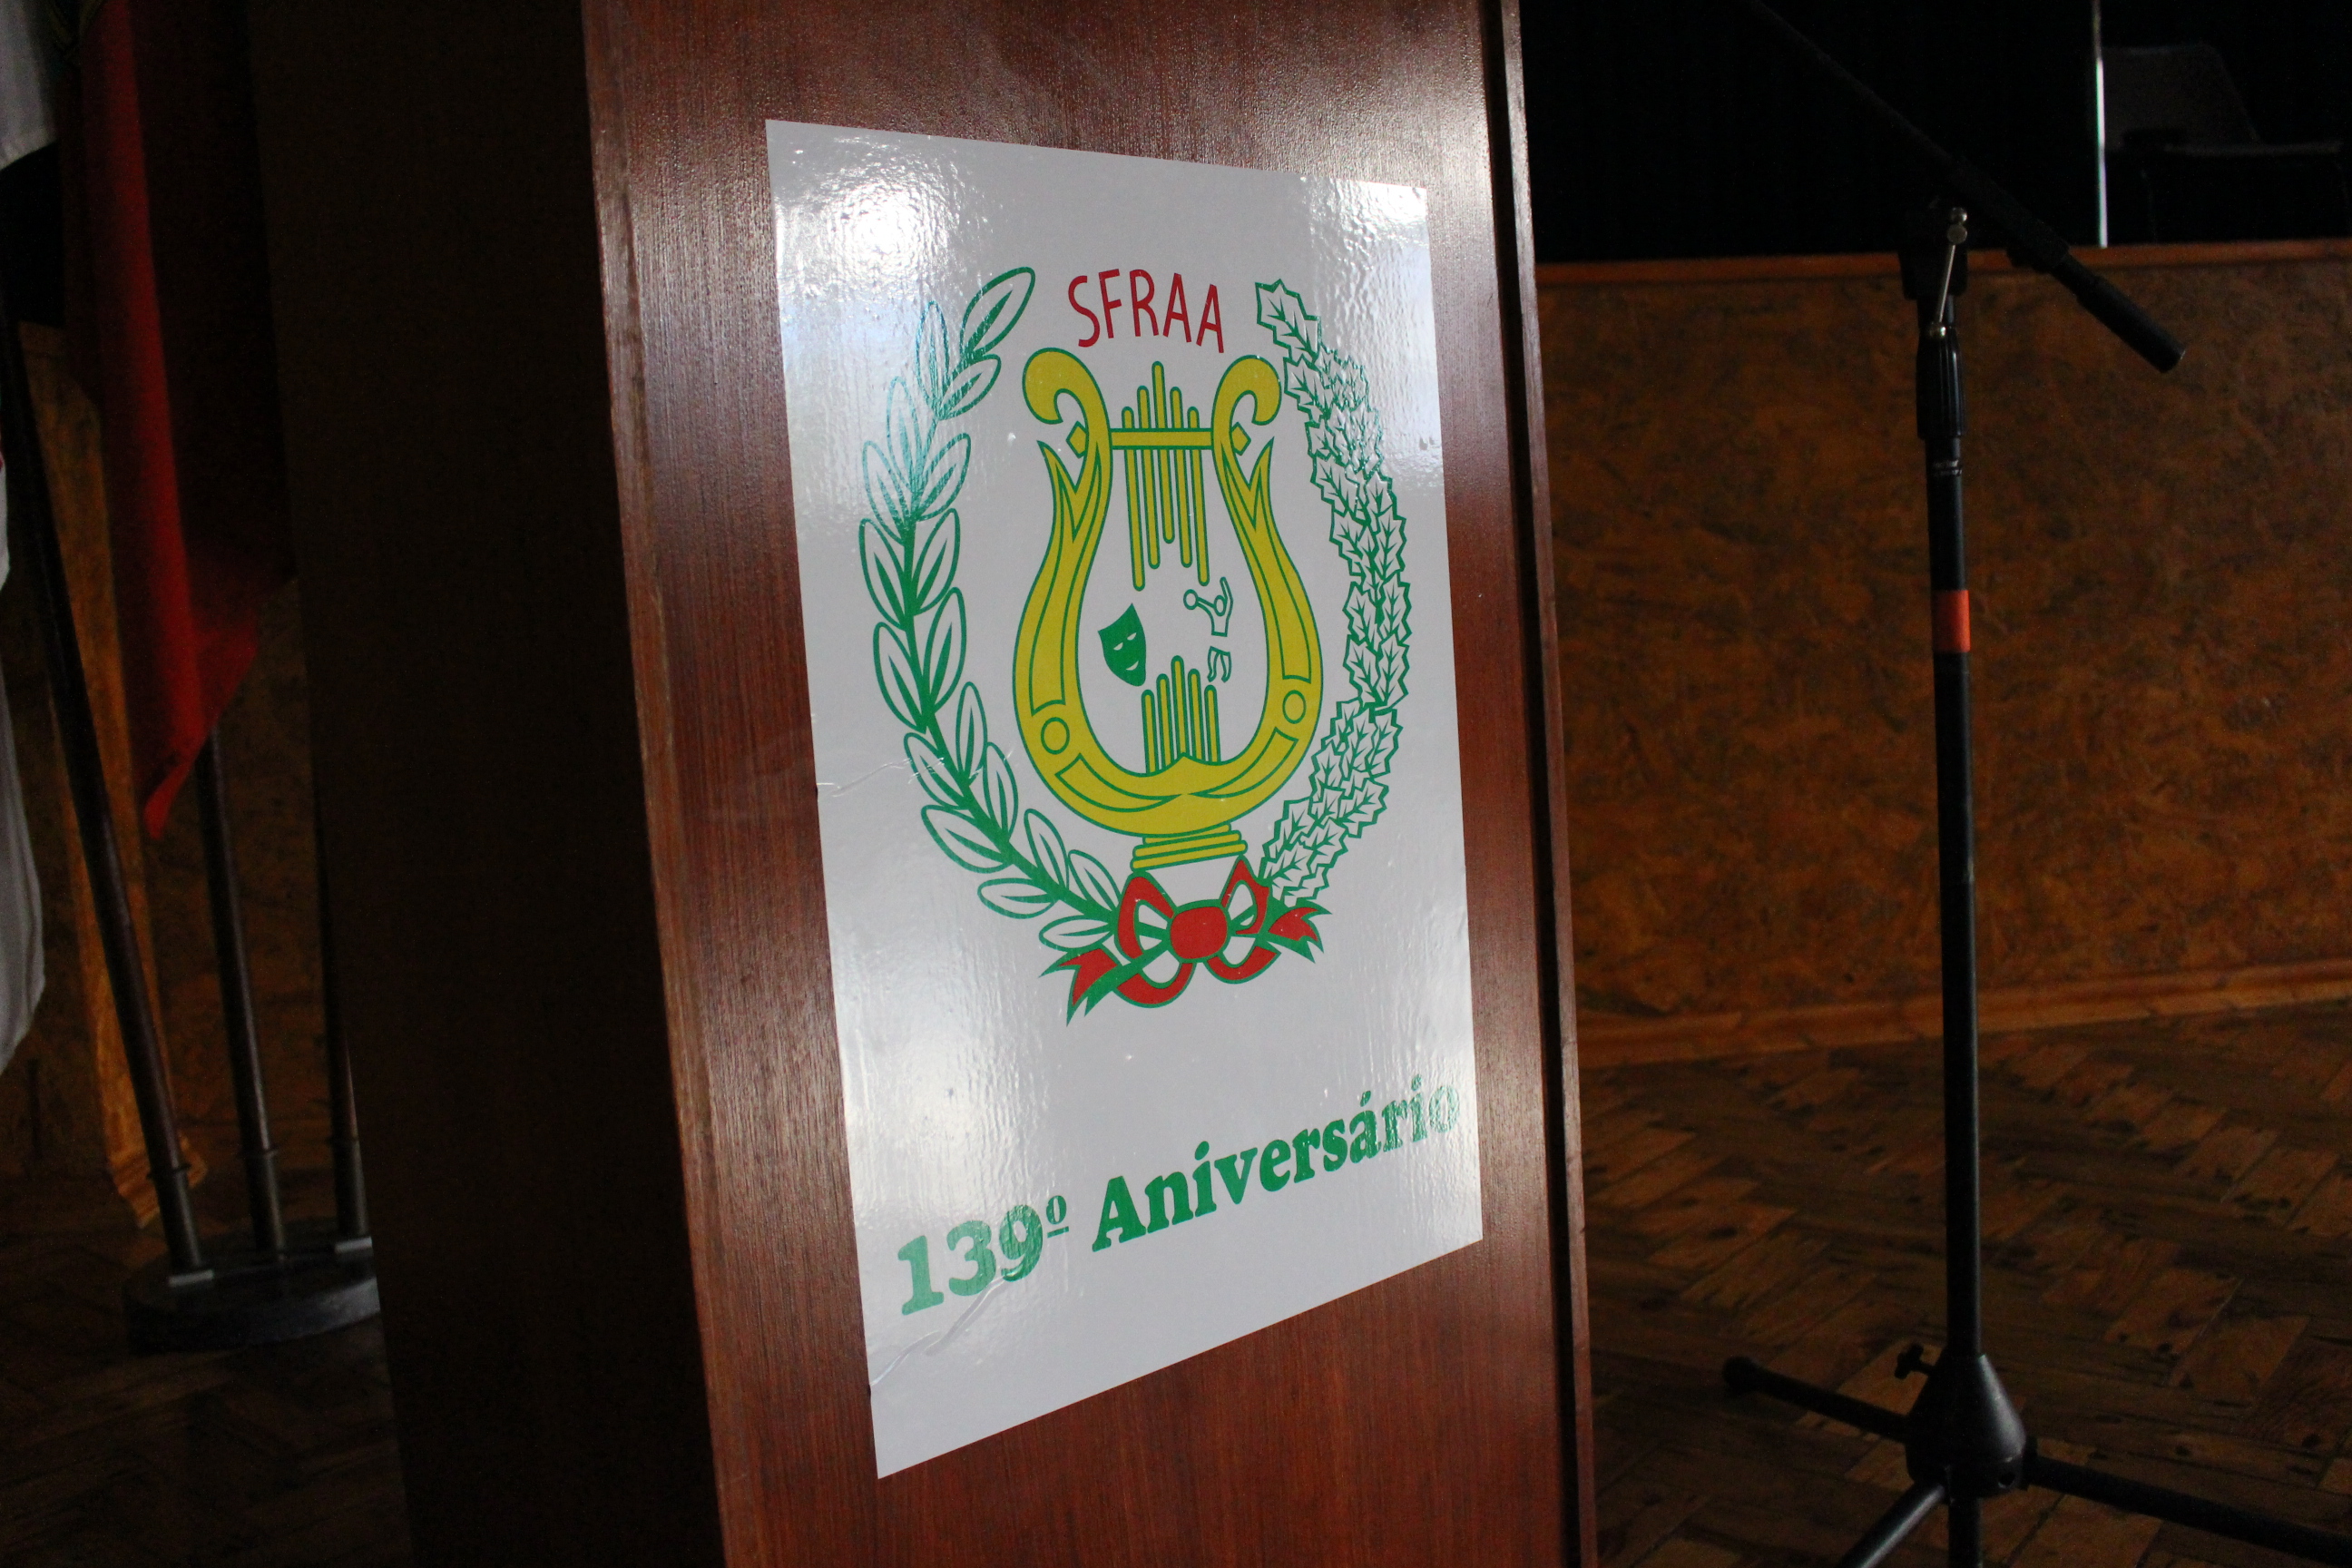 139º Aniversário da SFRAA – Como foi?